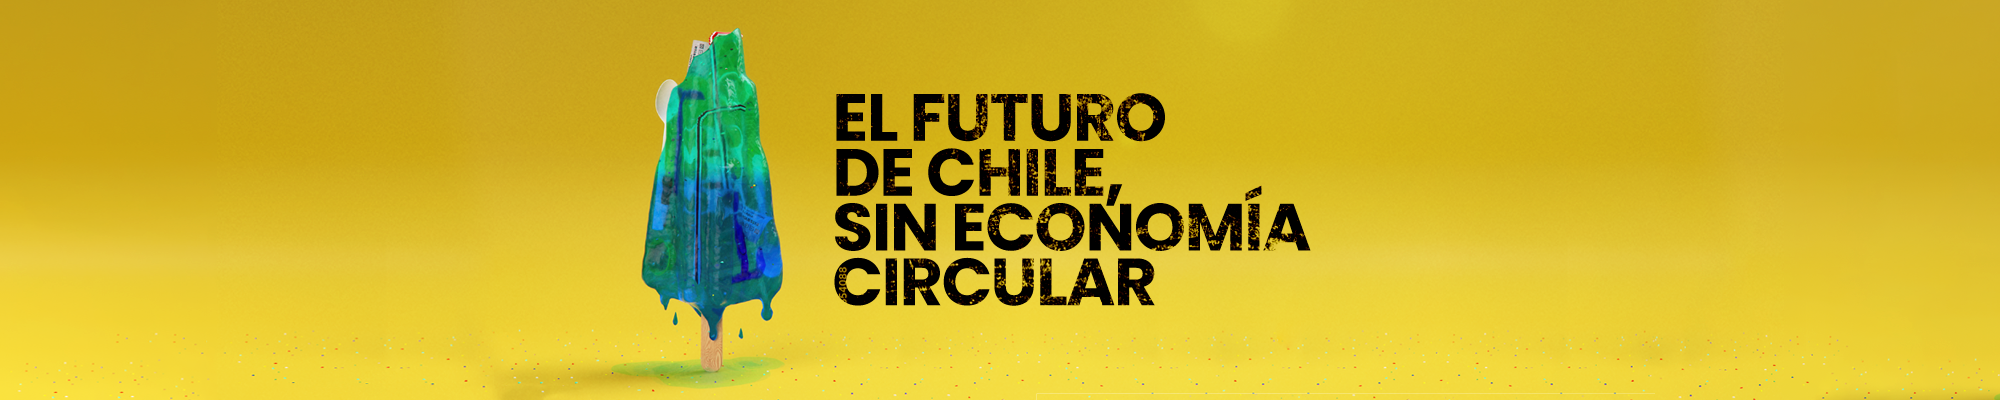 Chile avanza hacia una economía circular